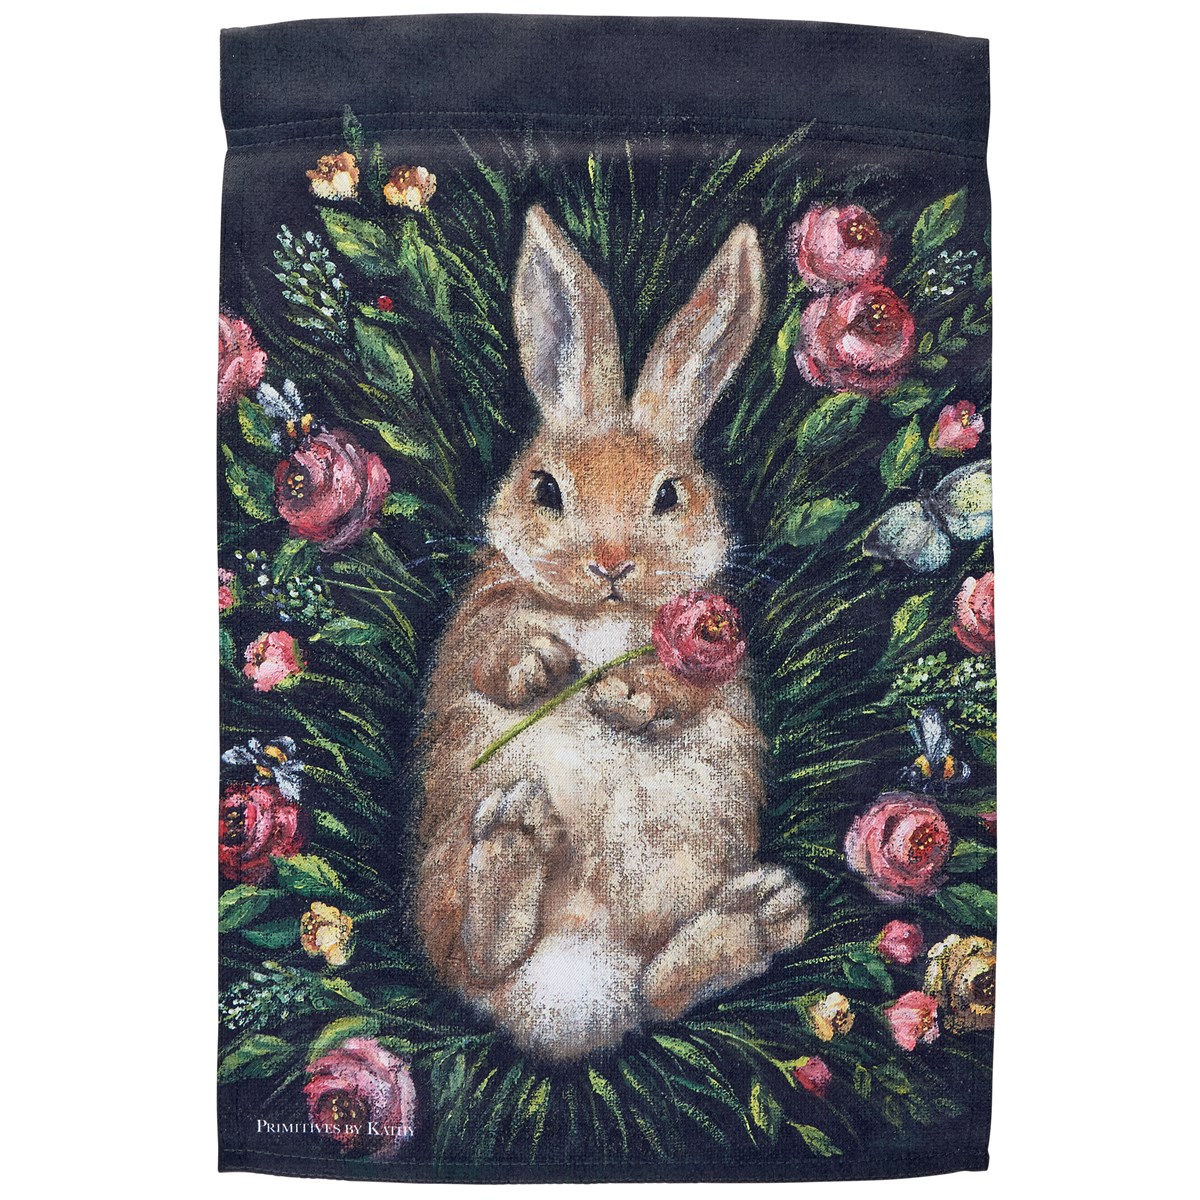 Snuggling Bunny Garden Flag - Polyester